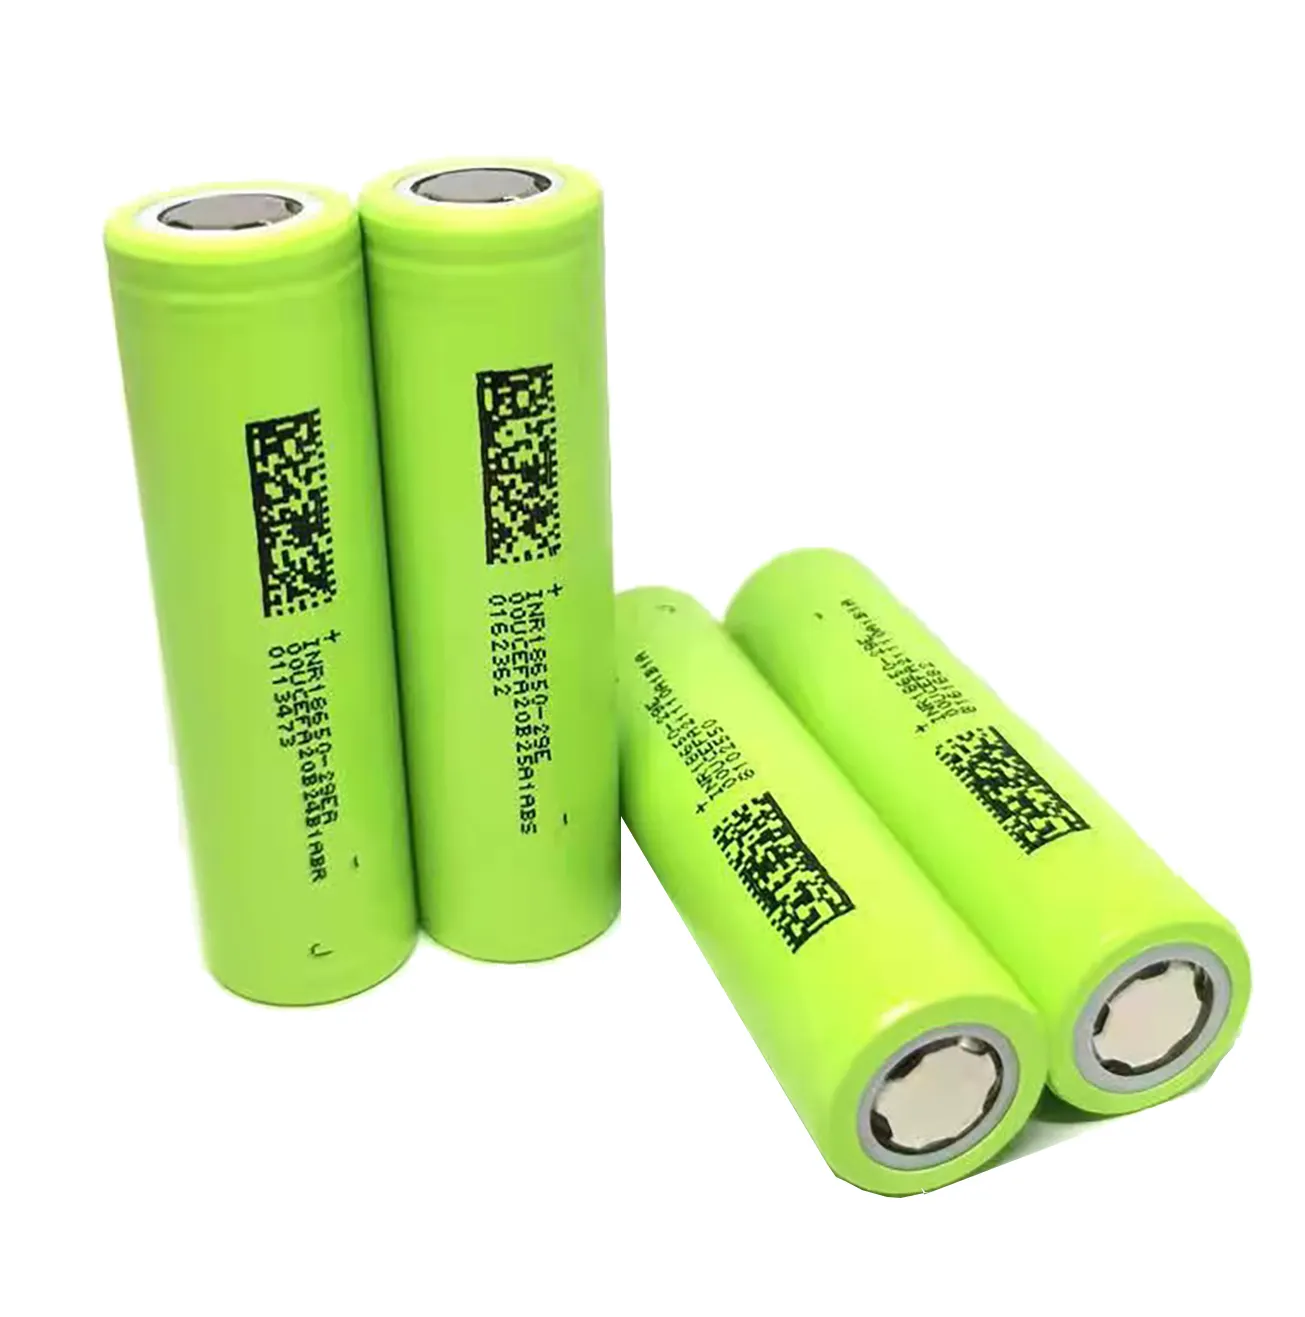 Alta qualidade lítio íon baterias 18650 bateria 3.7v 2500mah bateria 18650 li ion bateria recarregável com enorme desconto.